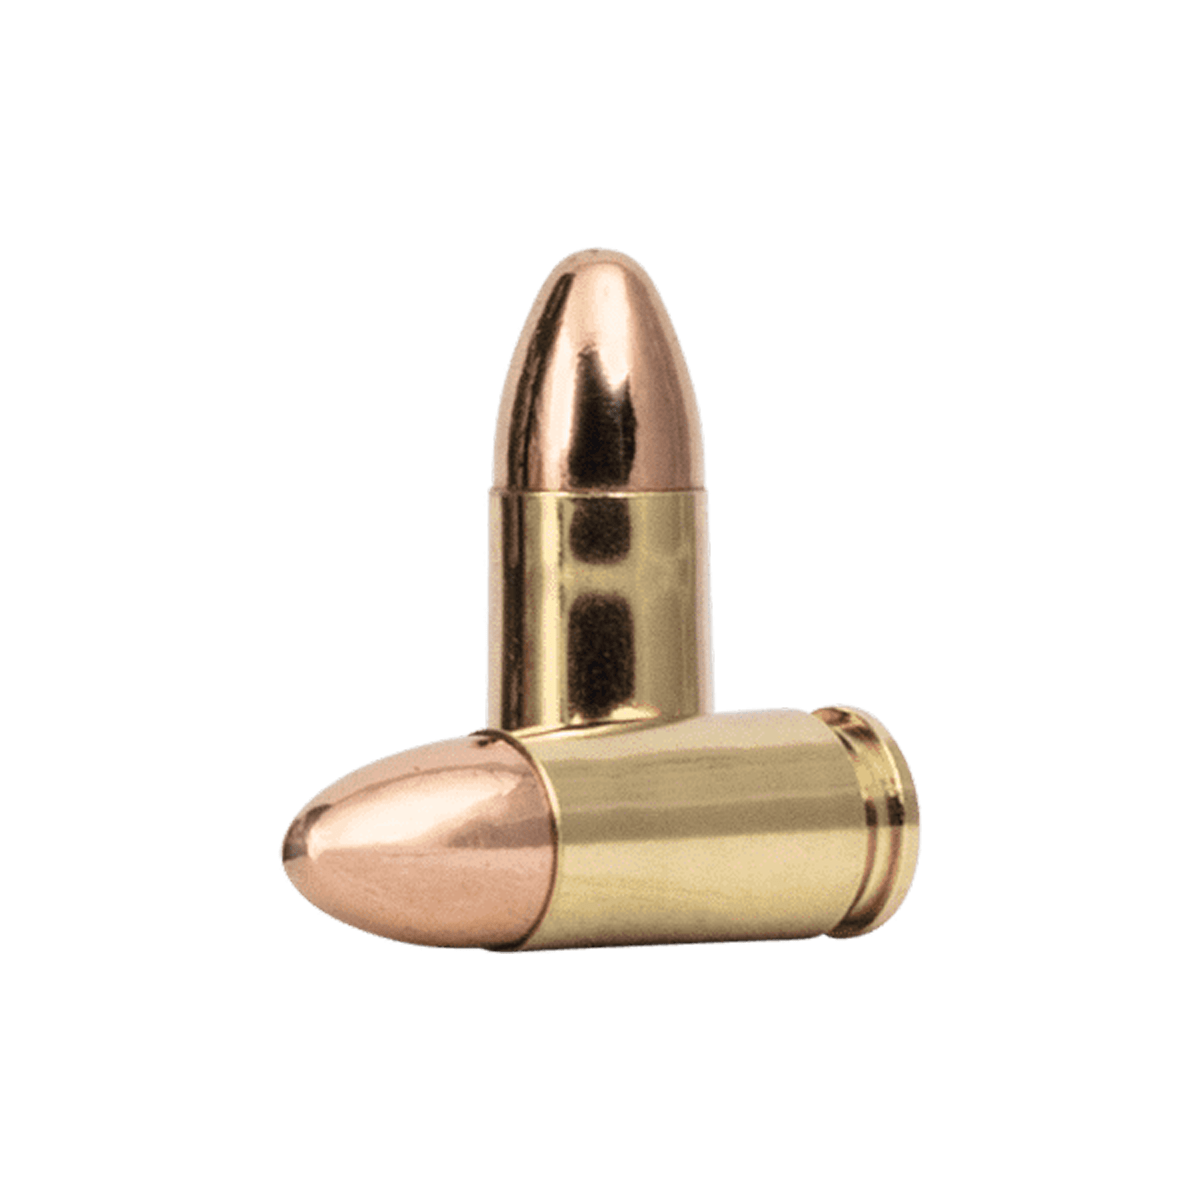 Blazer Brass 9mm Luger 115 Grain FMJ Ammunition (50 Rounds)